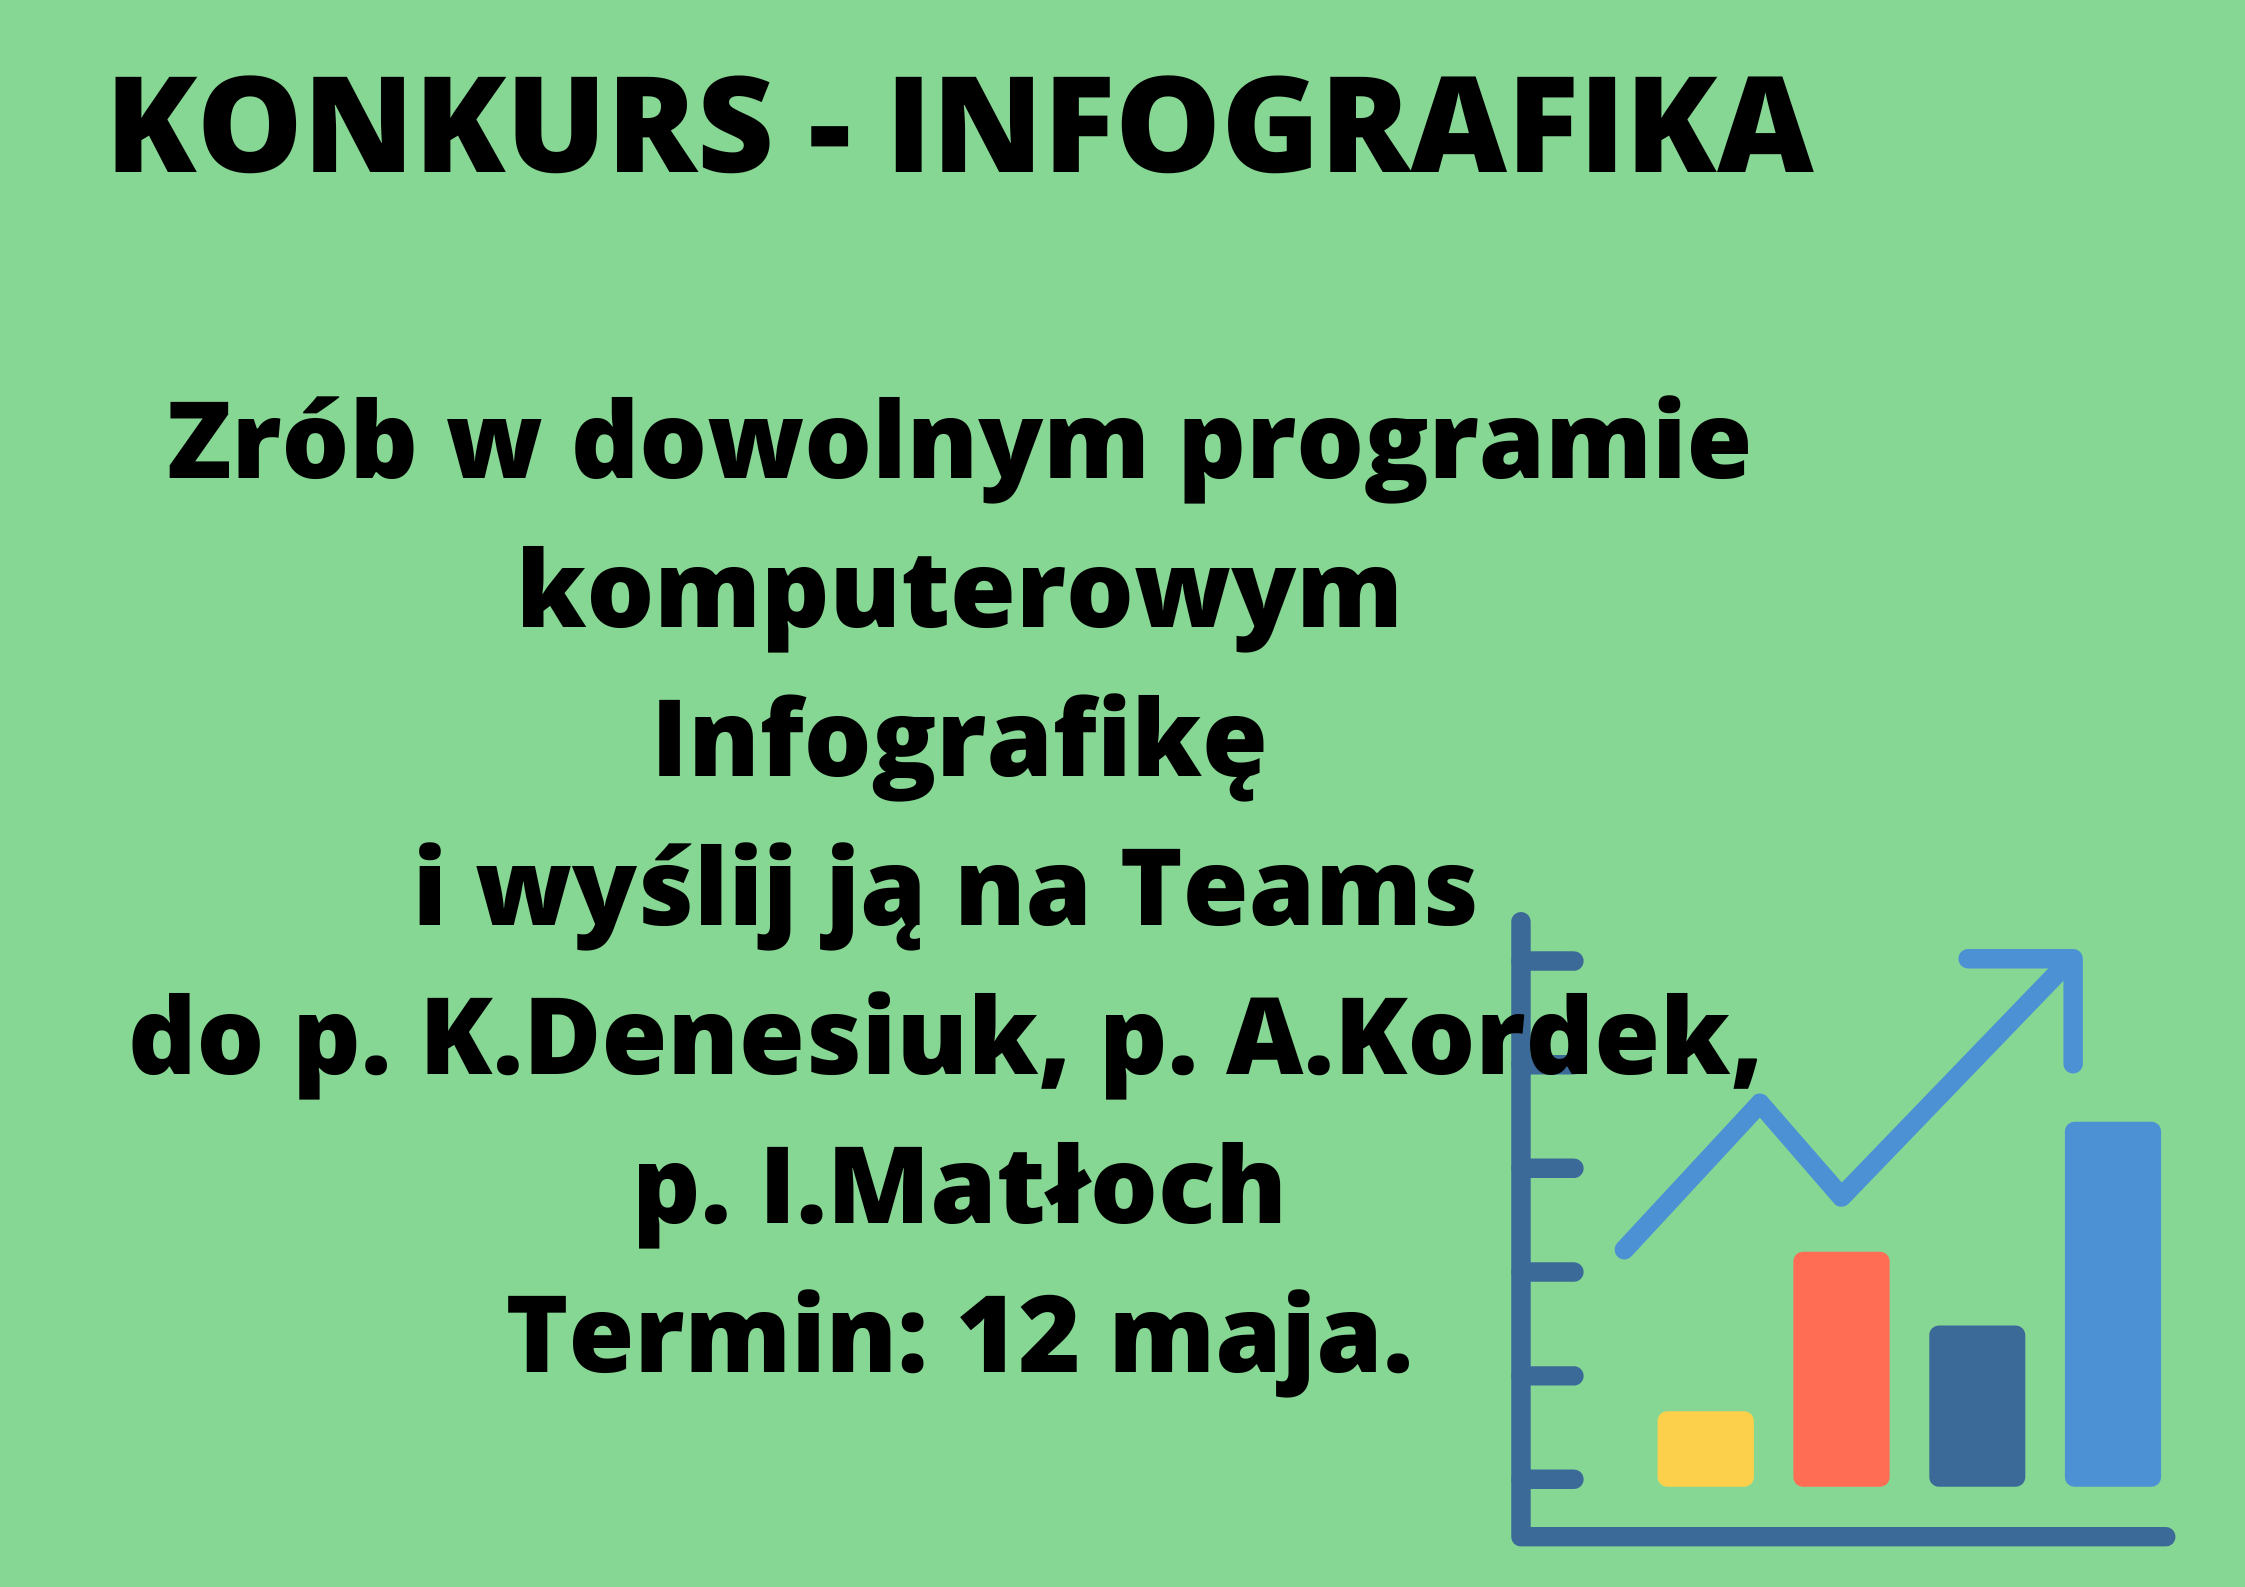 https://m.powiatszczycienski.pl/2023/04/orig/konkurs-infografika-zrob-w-dowolnym-programie-komputerowym-infografike-i-wyslij-ja-na-teams-do-p-k-denesiuk-p-a-kordek-p-i-matloch-61696.png